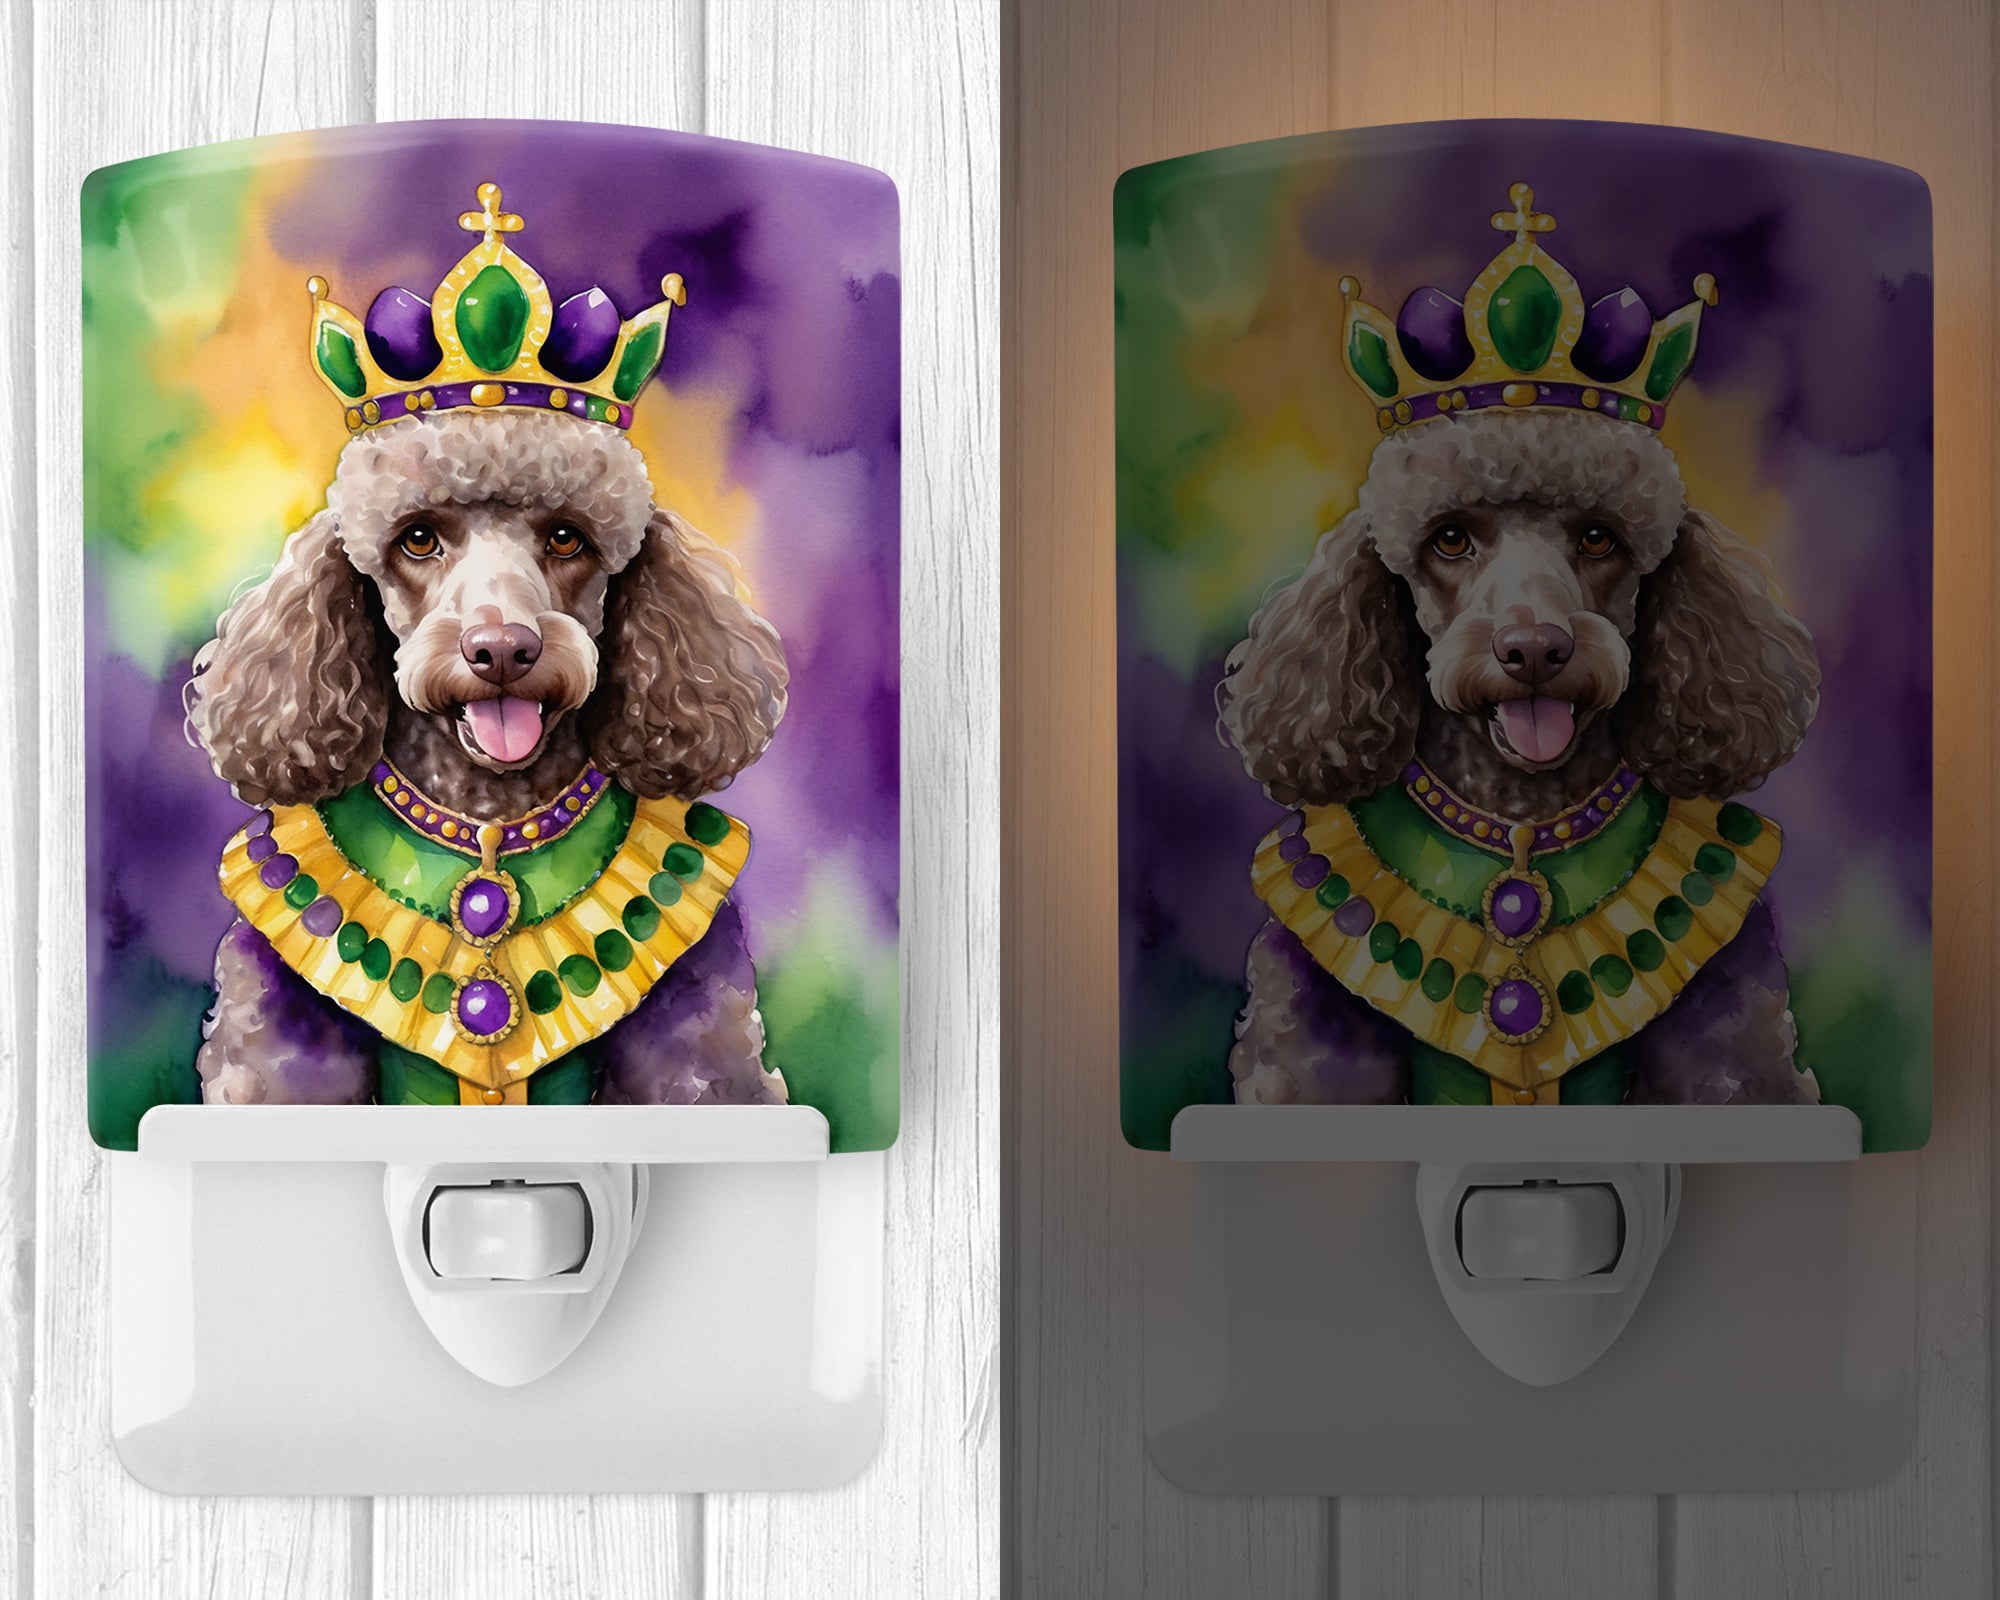 Buy this Chocolate Poodle King of Mardi Gras Ceramic Night Light